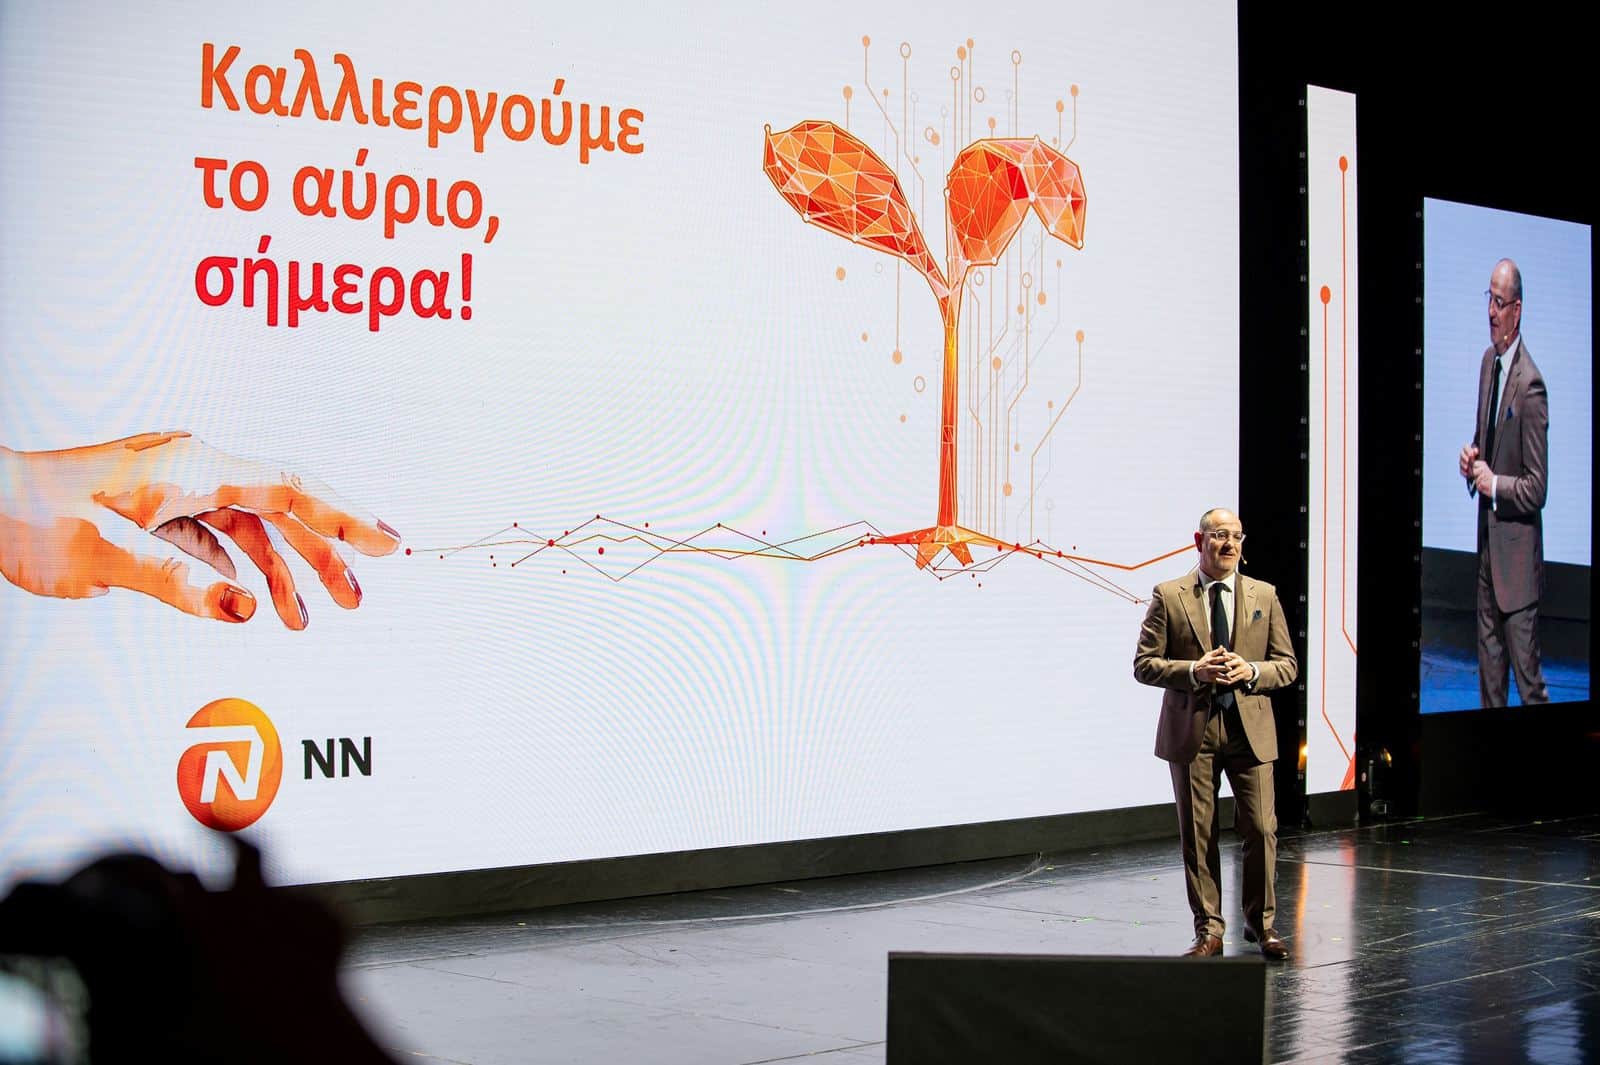 Συνέδριο Δικτύου Πωλήσεων NN Hellas: «Καλλιεργούμε το αύριο, σήμερα!»